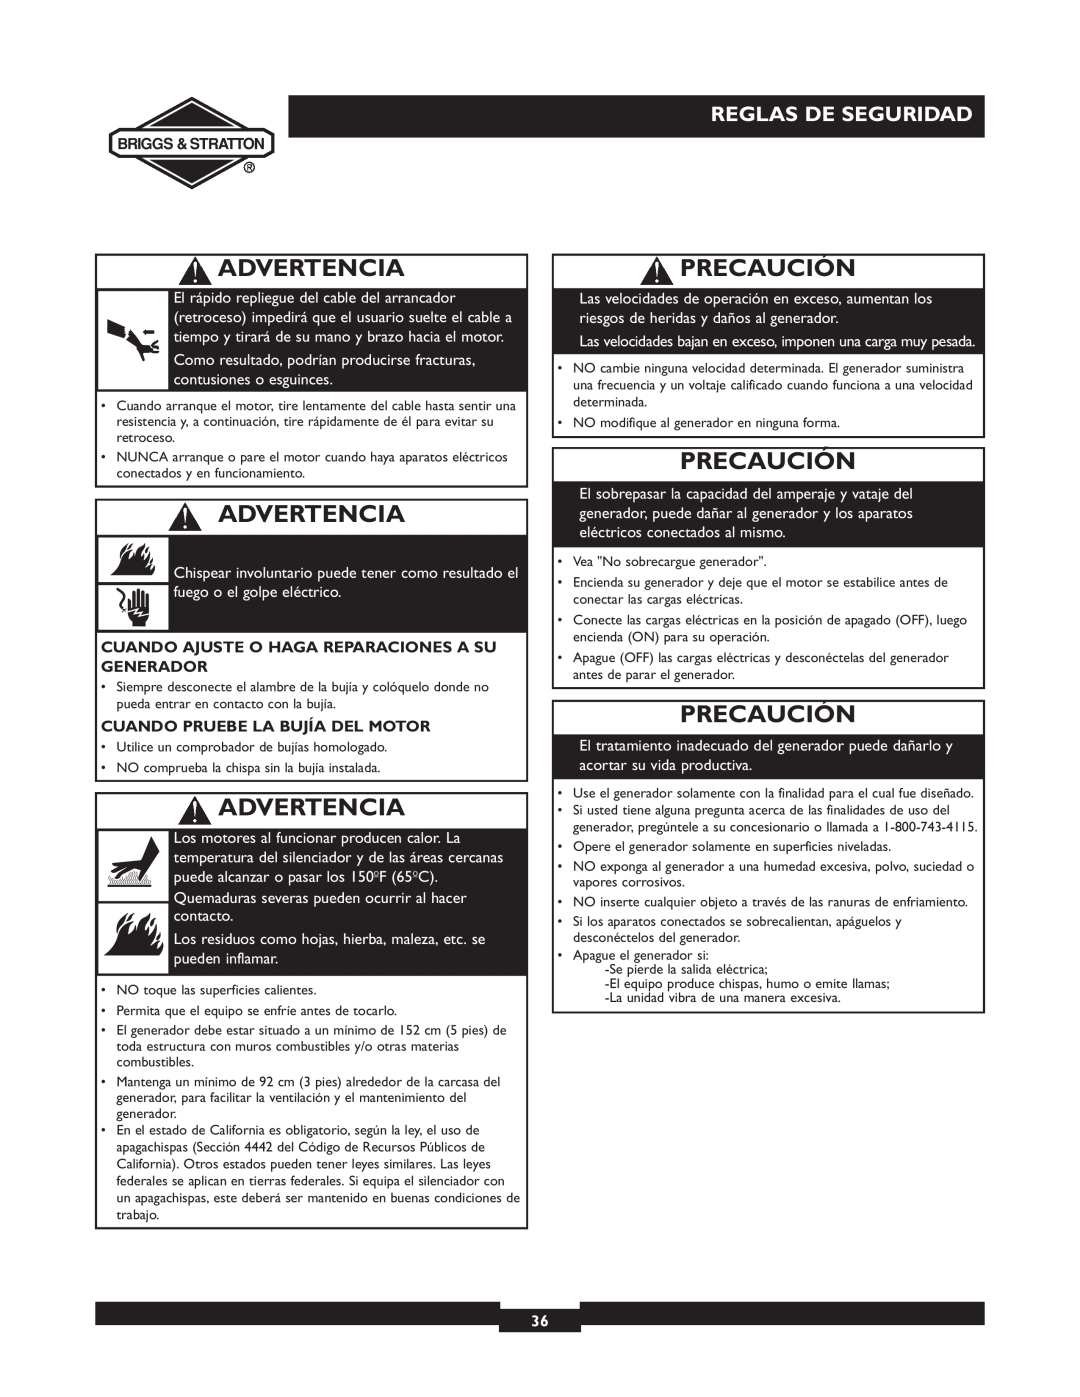 Briggs & Stratton 01532-4 owner manual Precaución, Advertencia, Reglas De Seguridad 